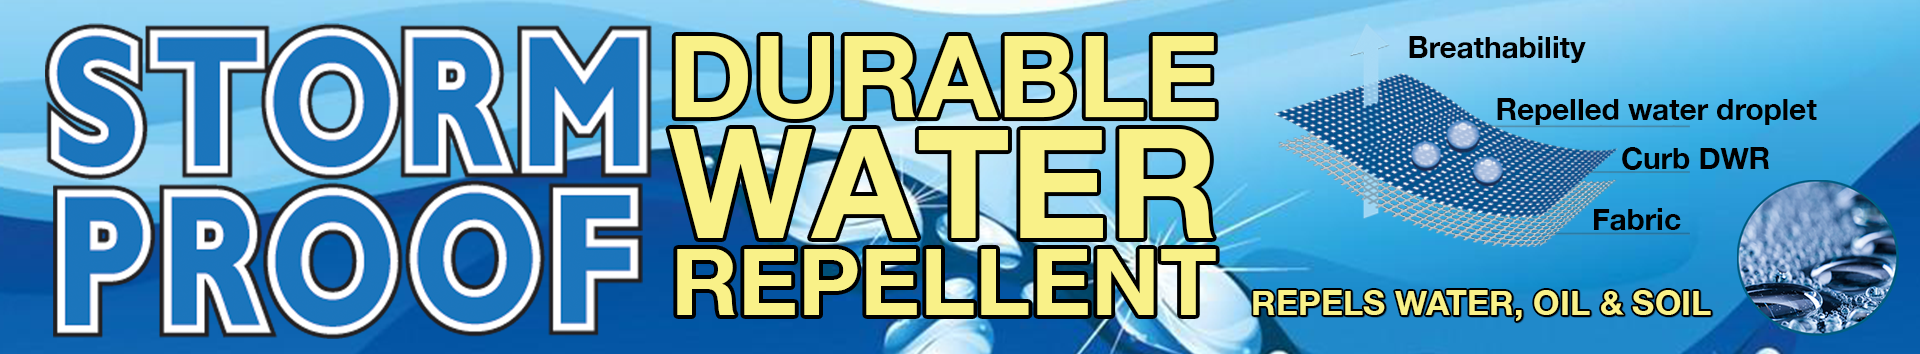 Water Repellents